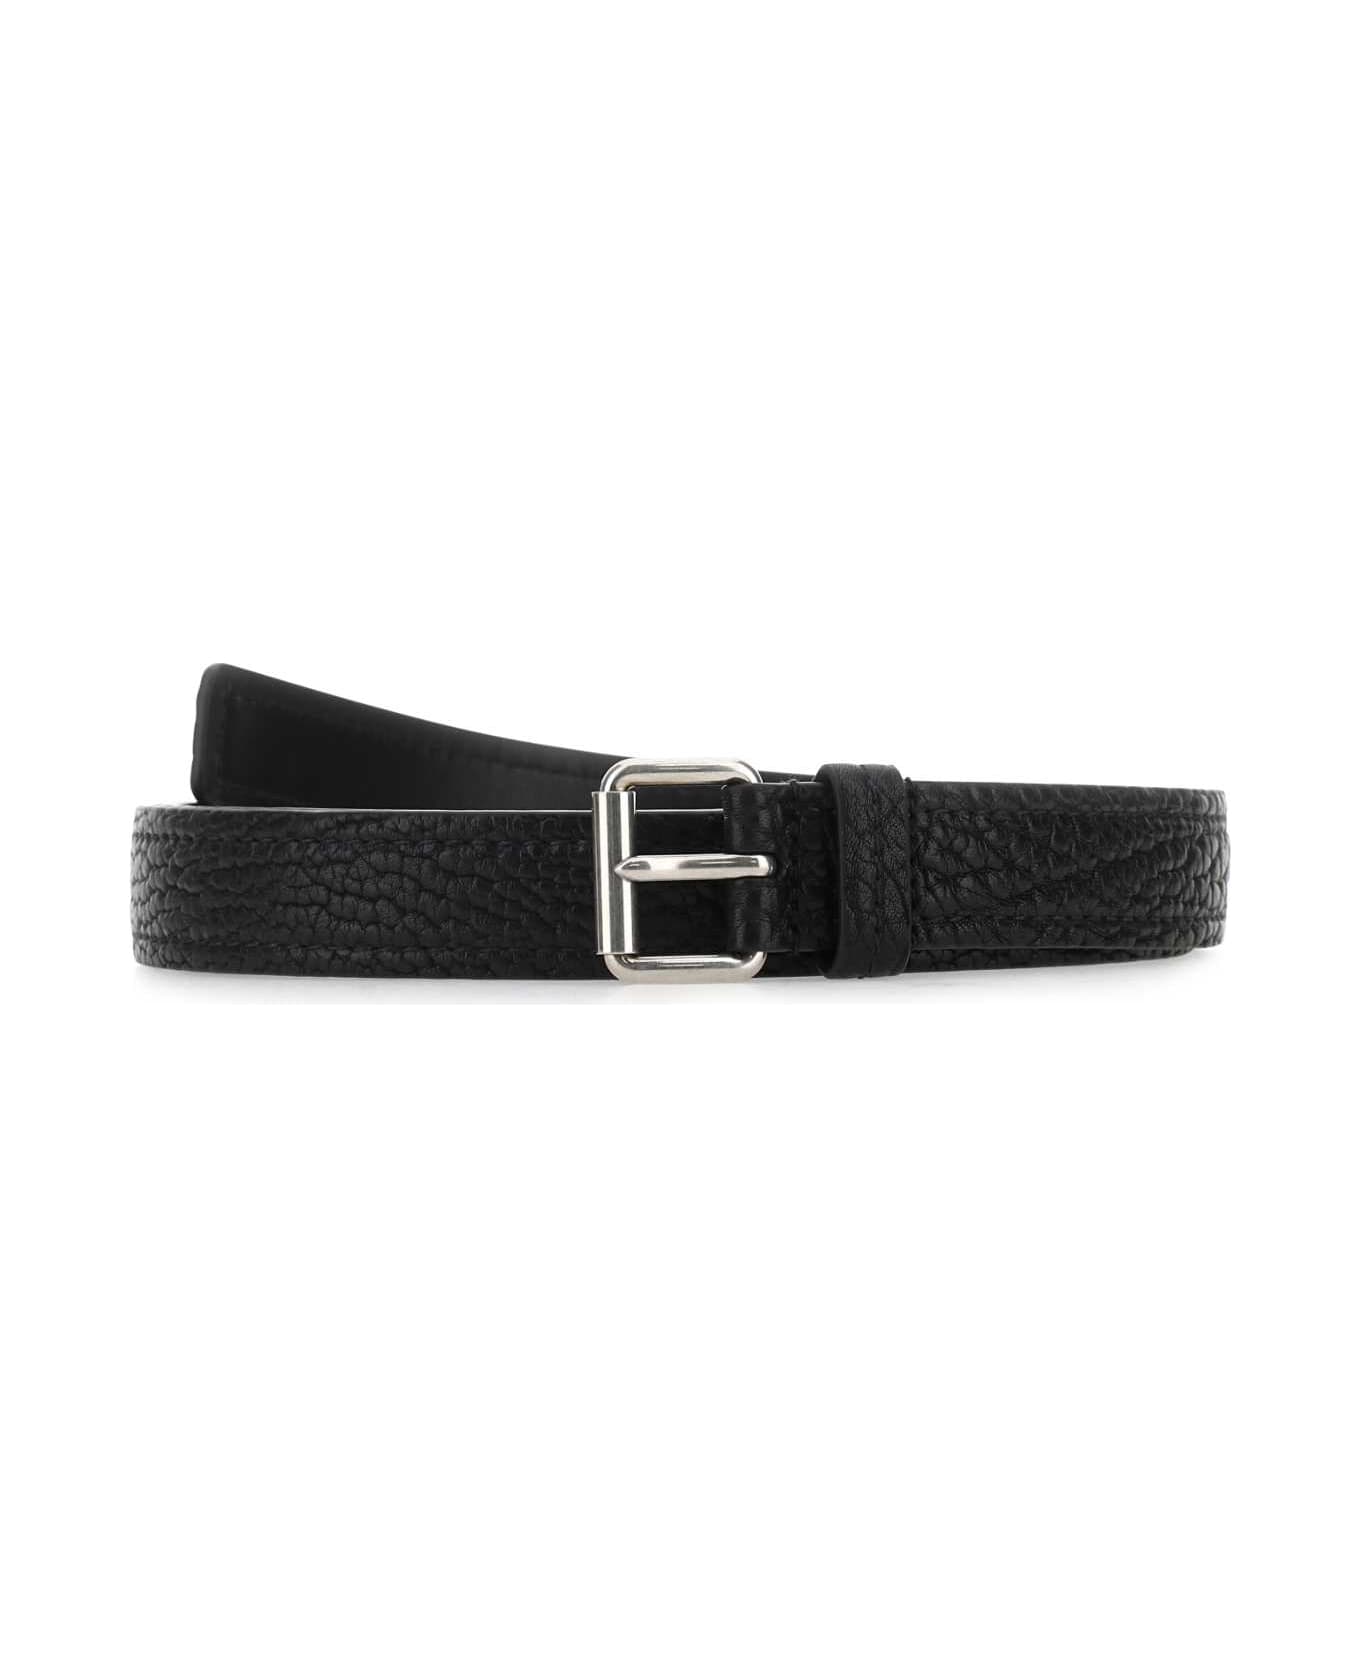 Prada Black Leather Belt - F0002